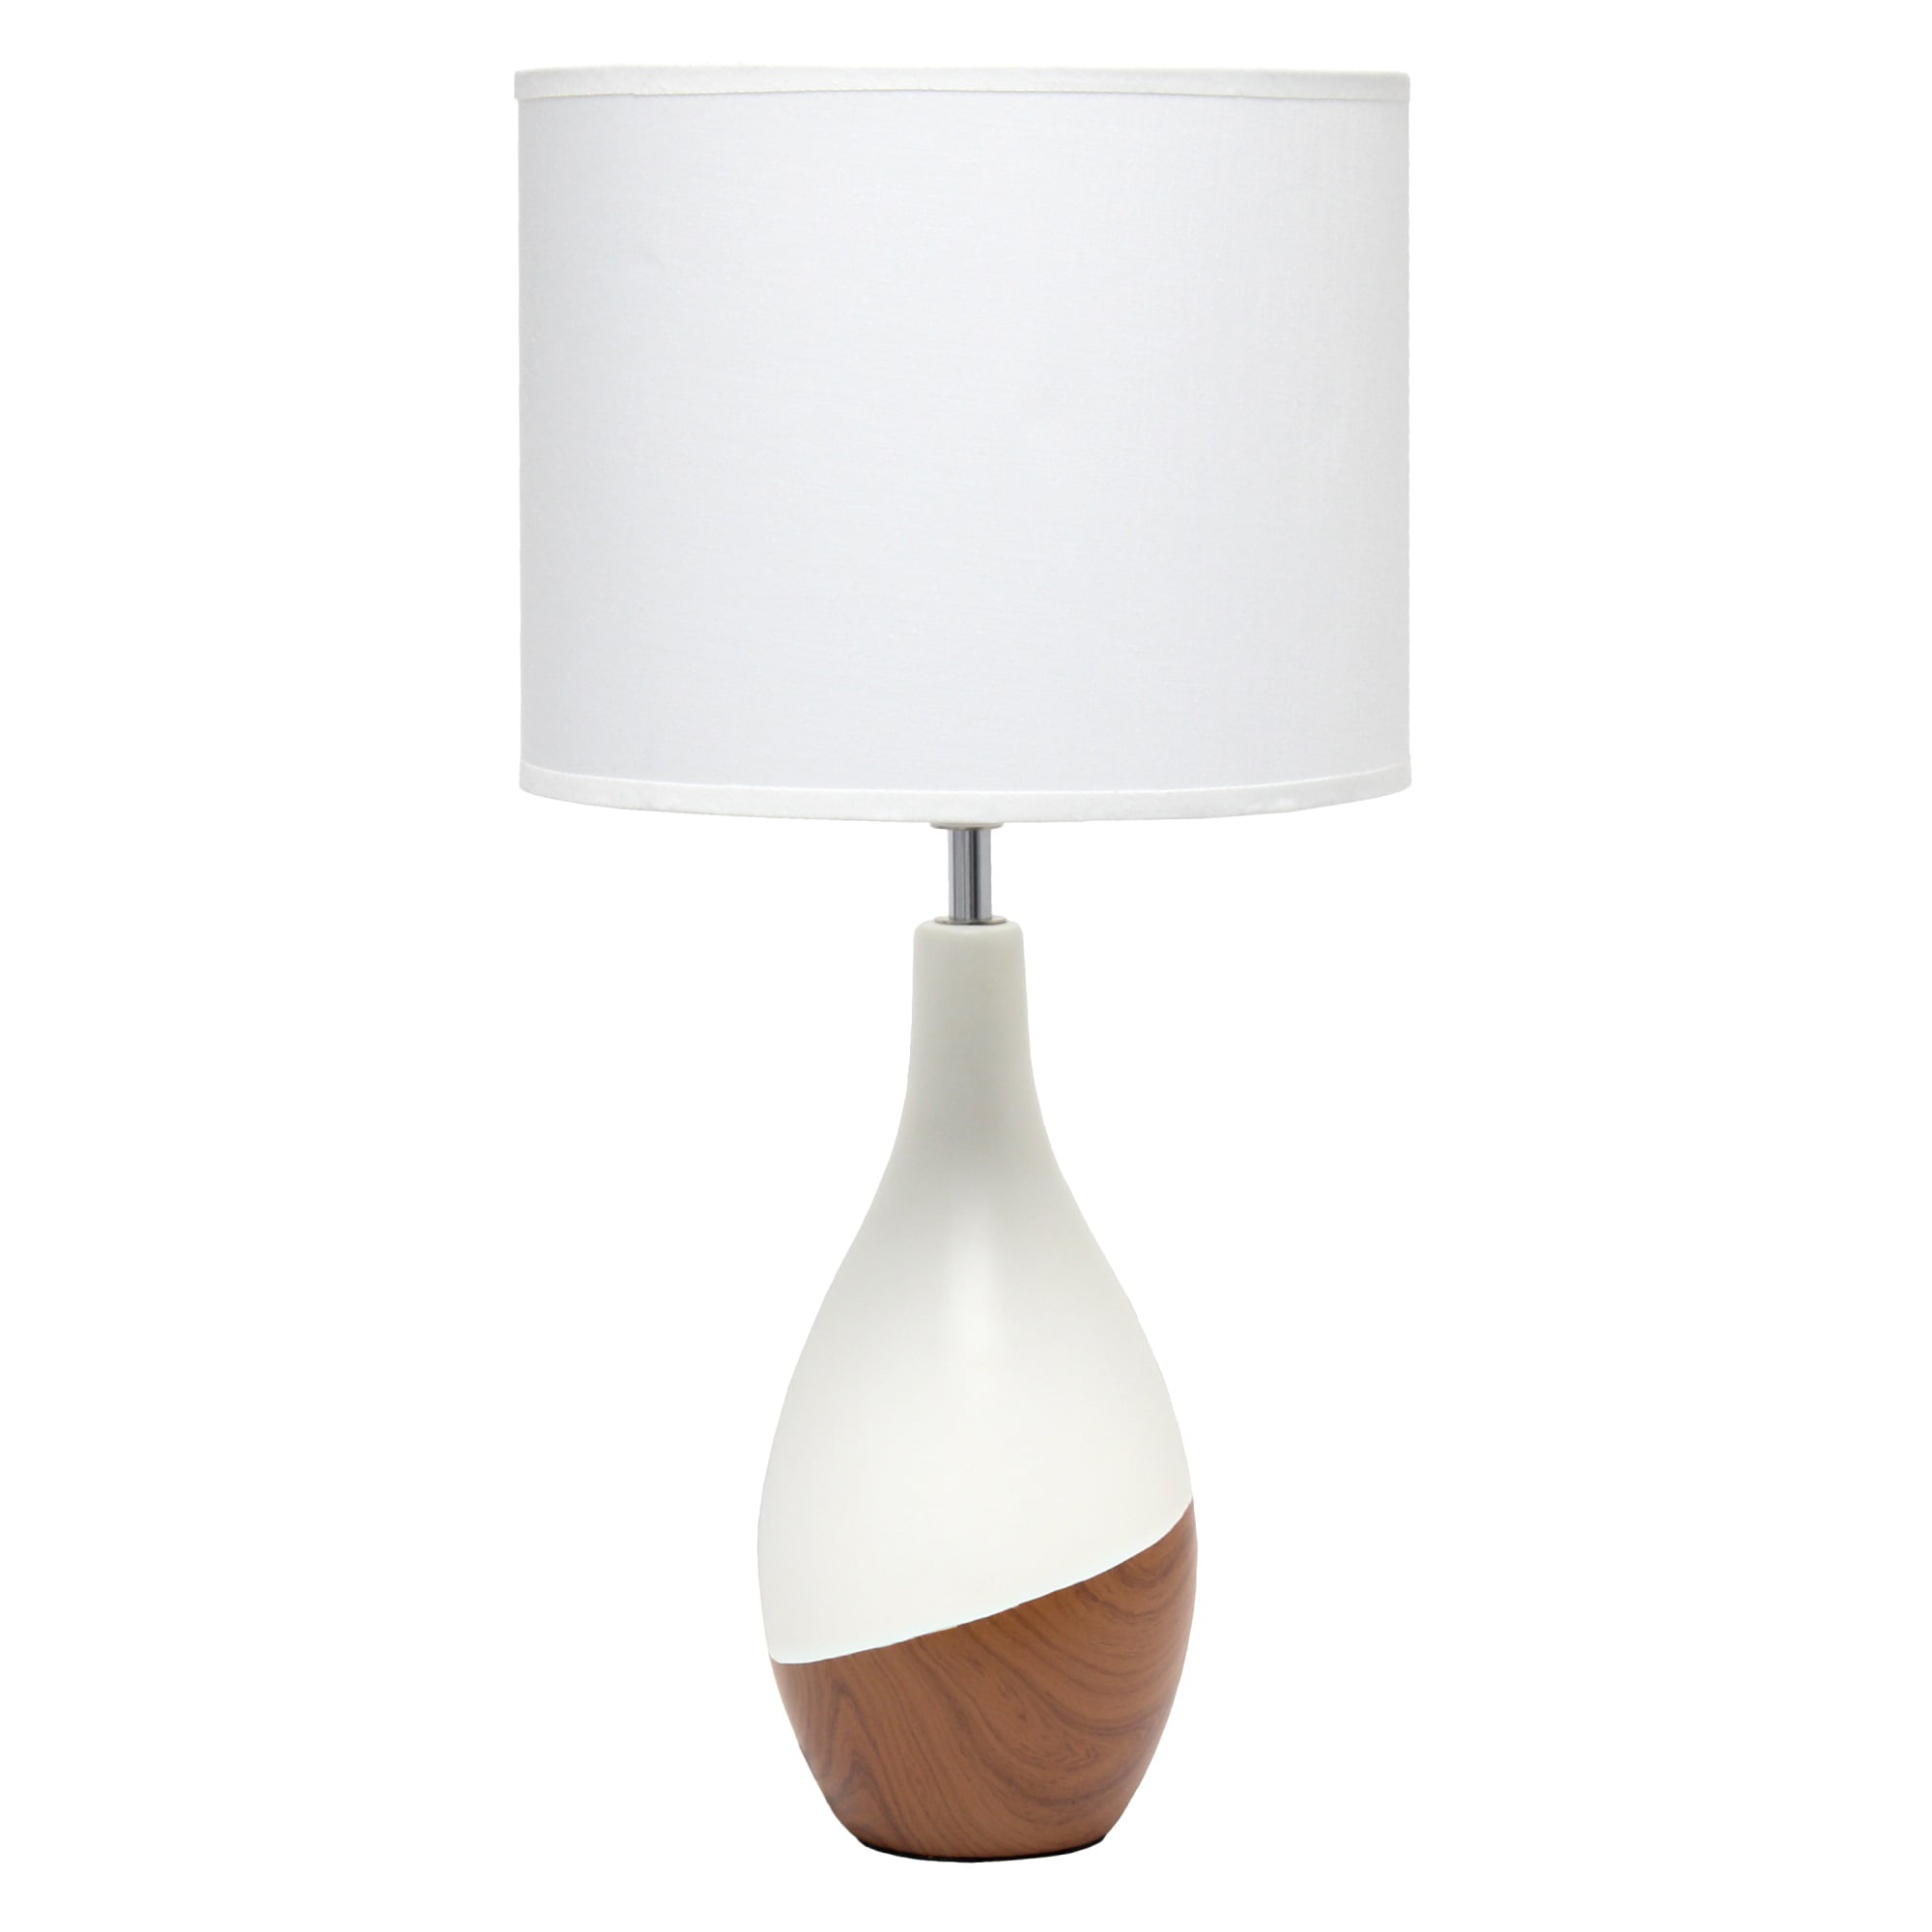 Simple Designs Strikers Basic Table Lamp, Dark Wood